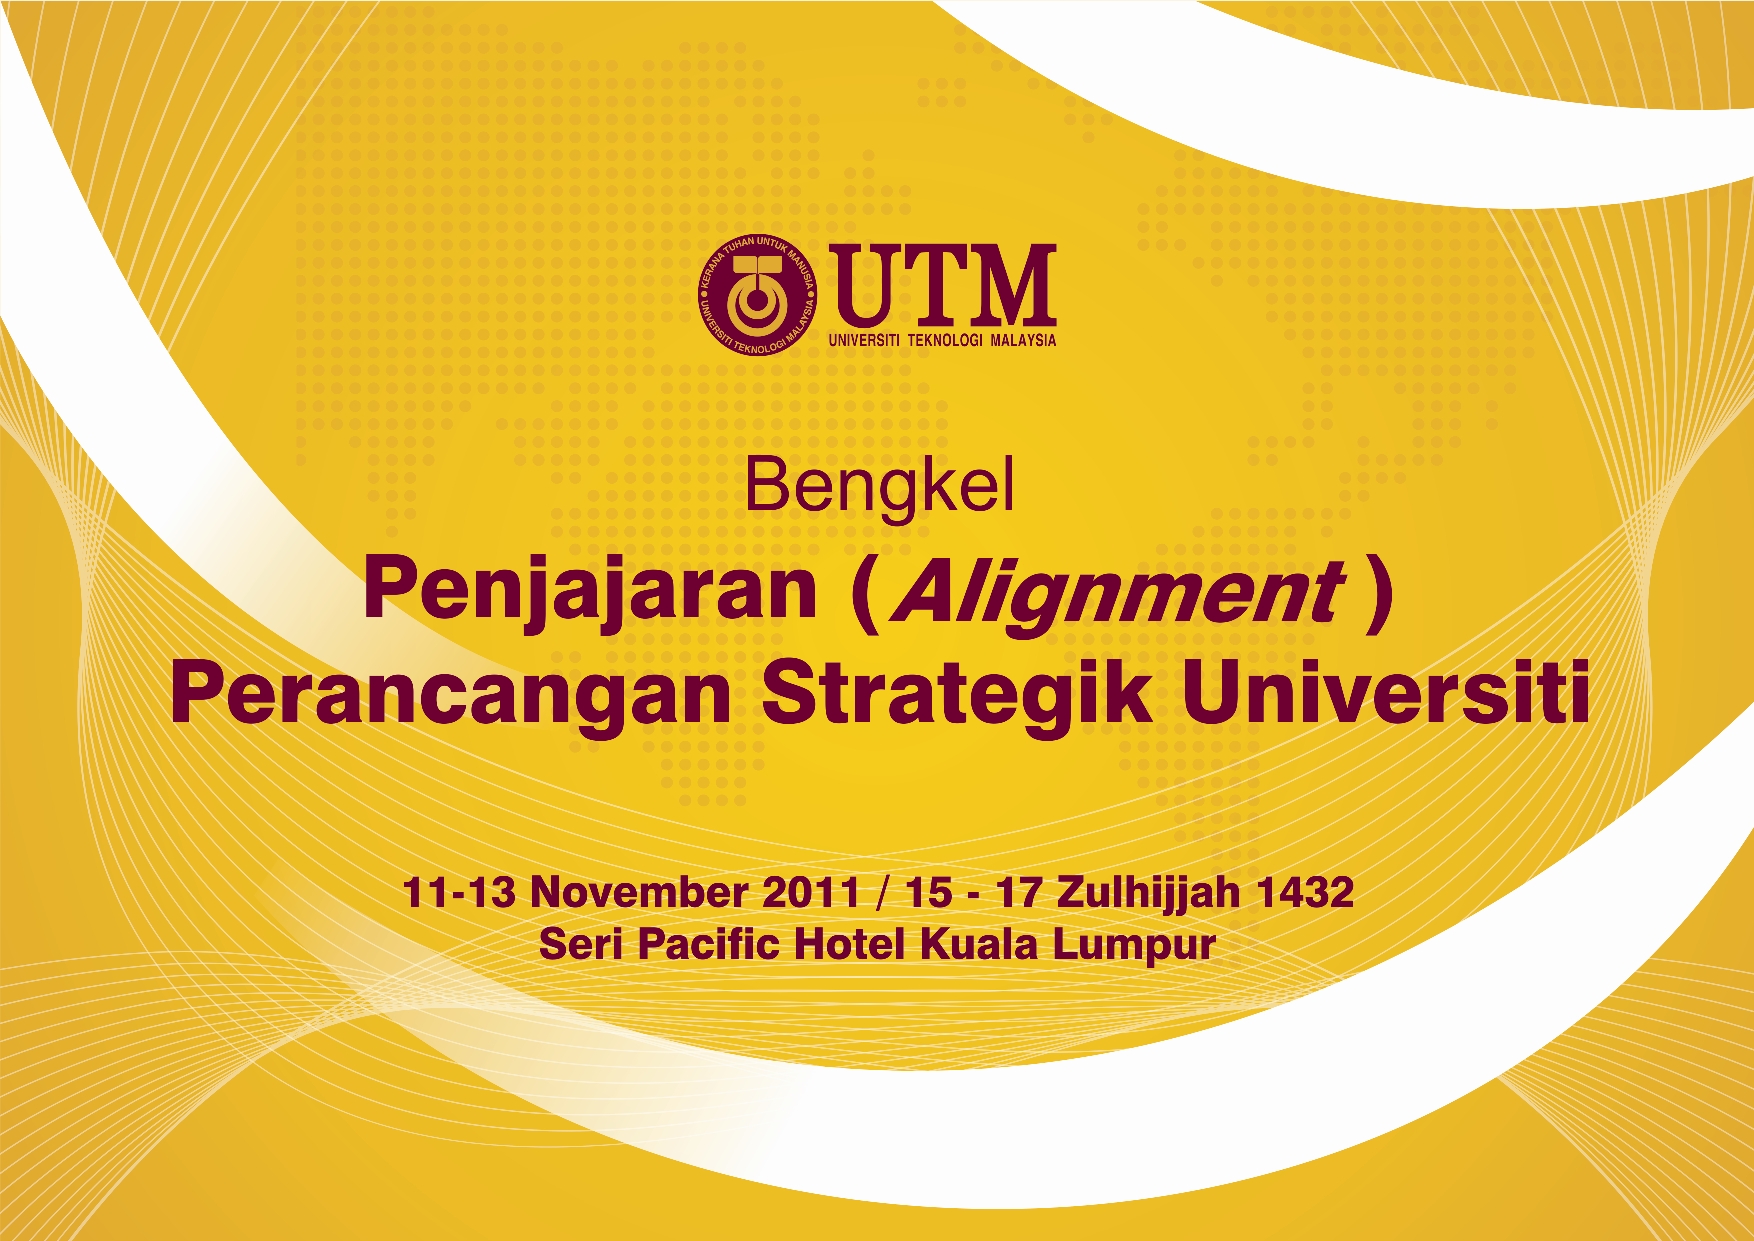 Bengkel Penjajaran (Alignment) Perancangan Strategik Universiti